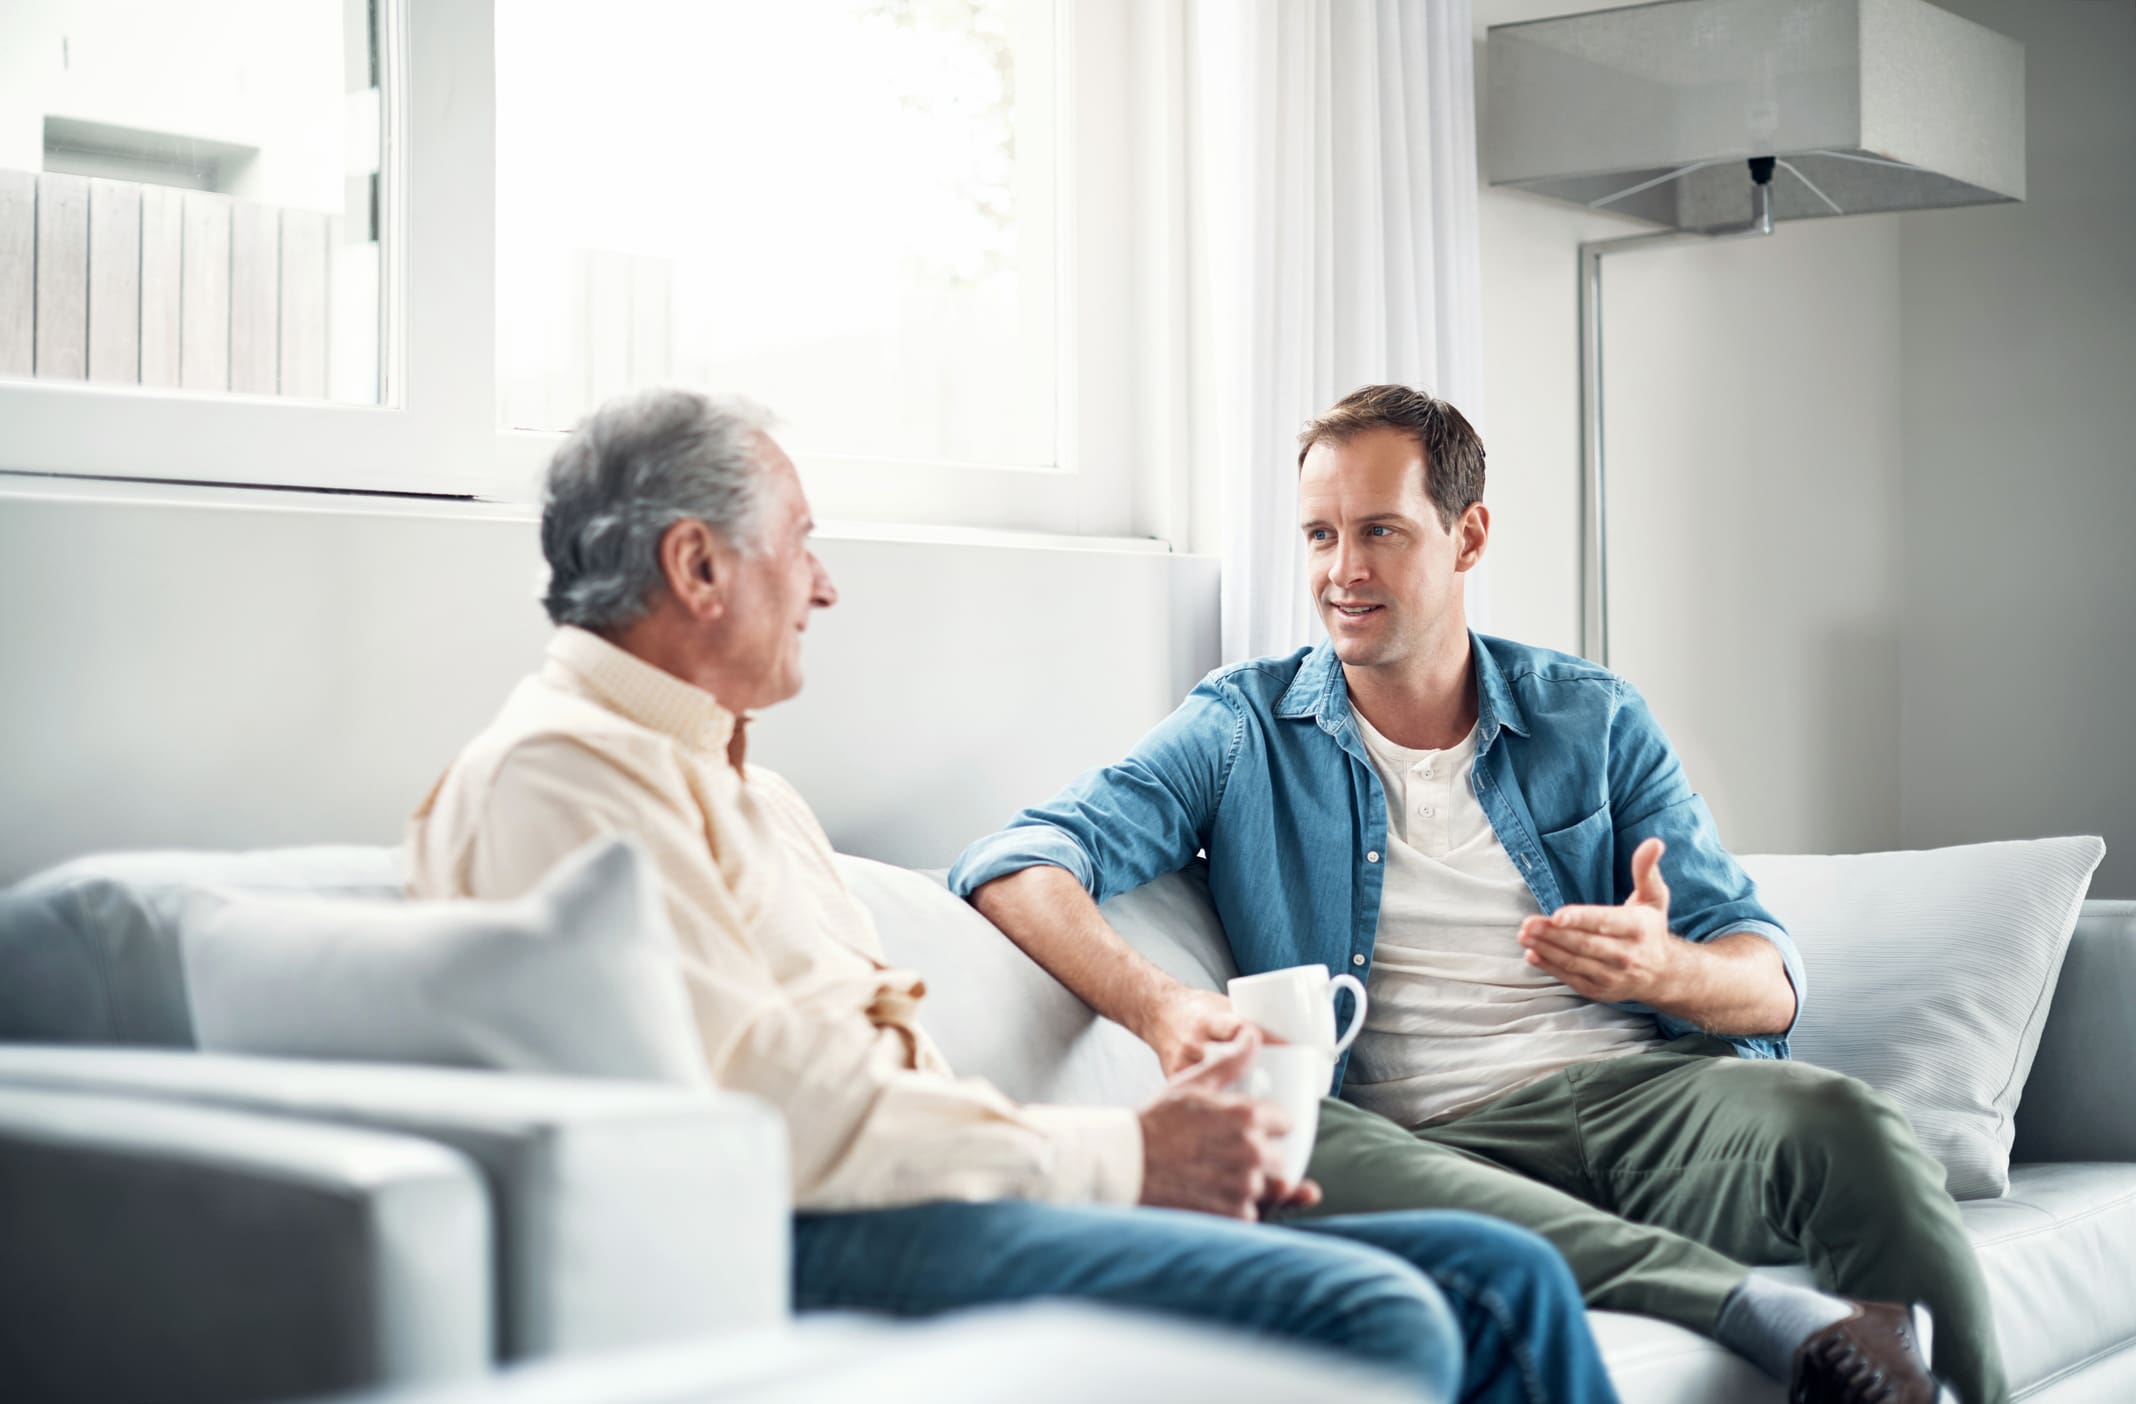 Egy férfi beszélget az apjával egy kanapén ülve egy szobában.